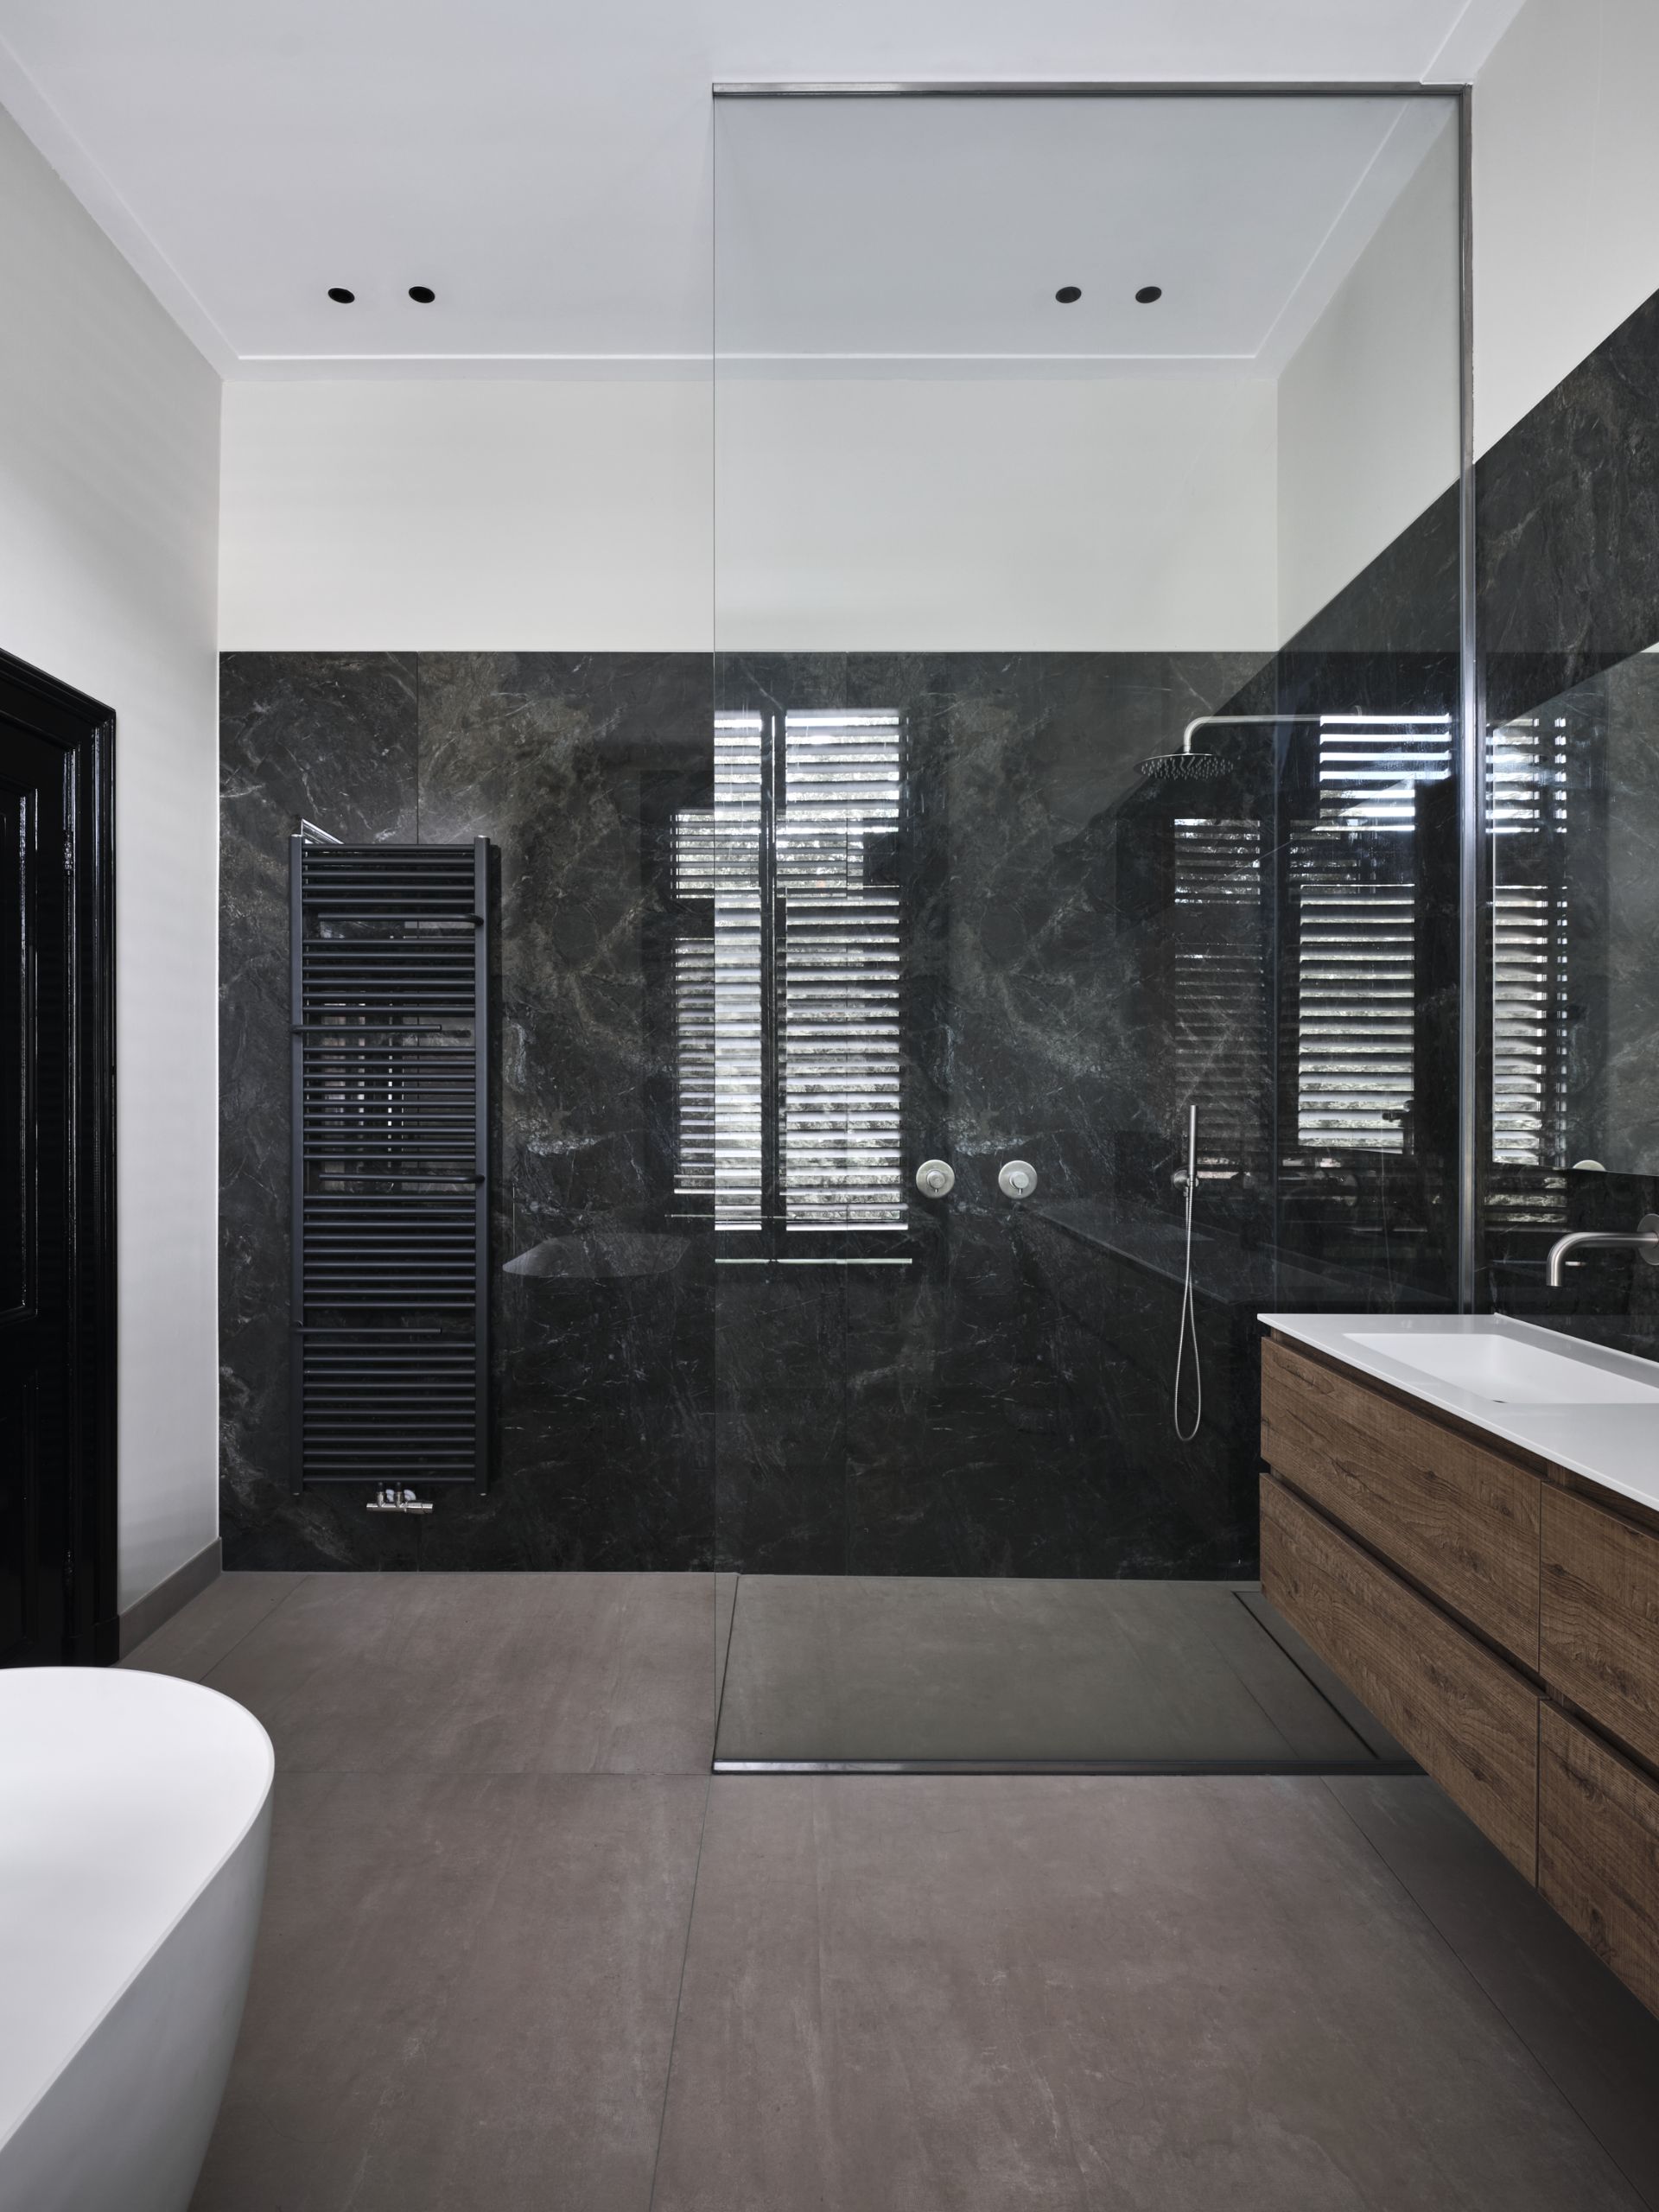 Foto: een badkamer met een moderne uitstraling      eerste kamer badkamers   003